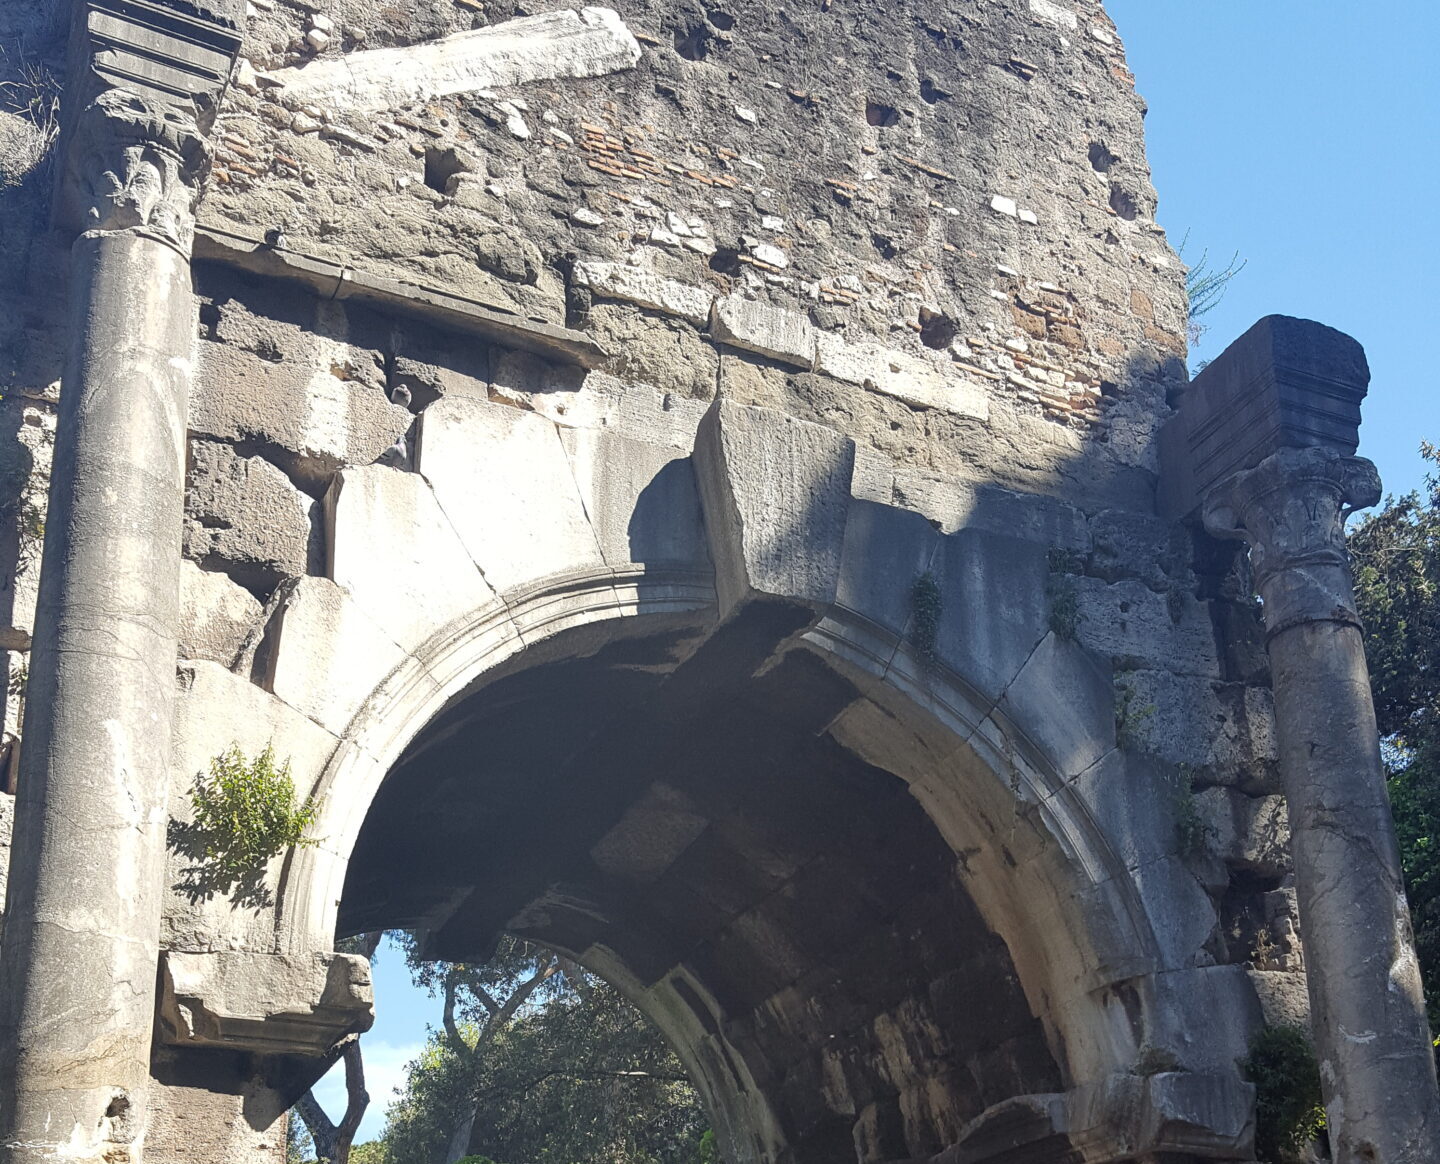 Arco di Druso (Arch of Drusus)